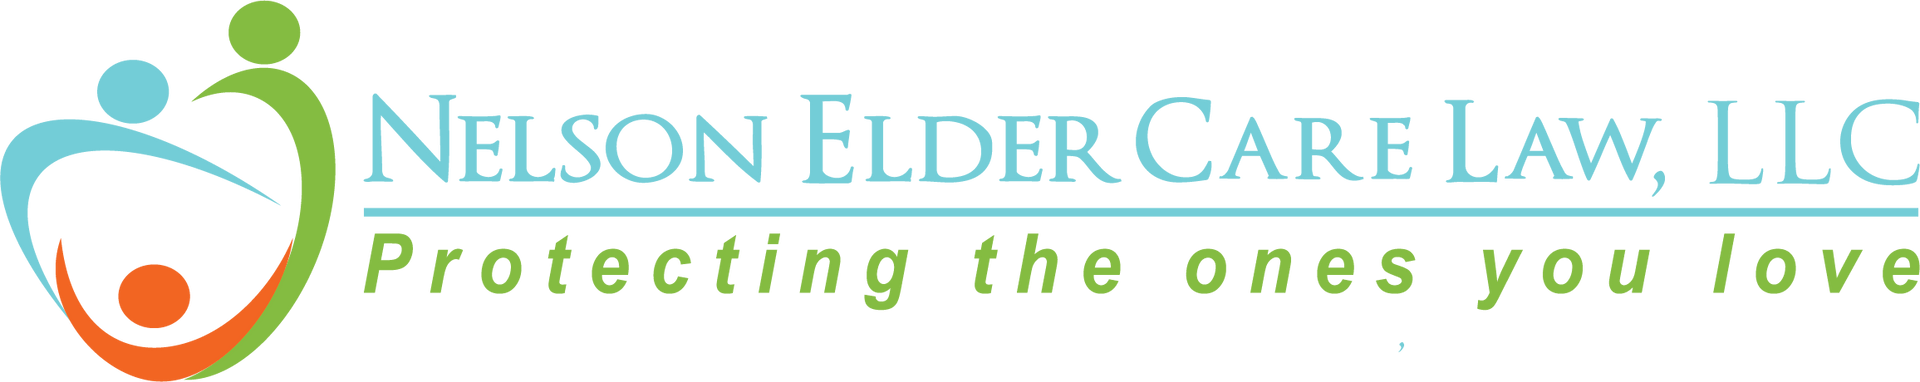 Nelson Elder Care Law, LLC Logo